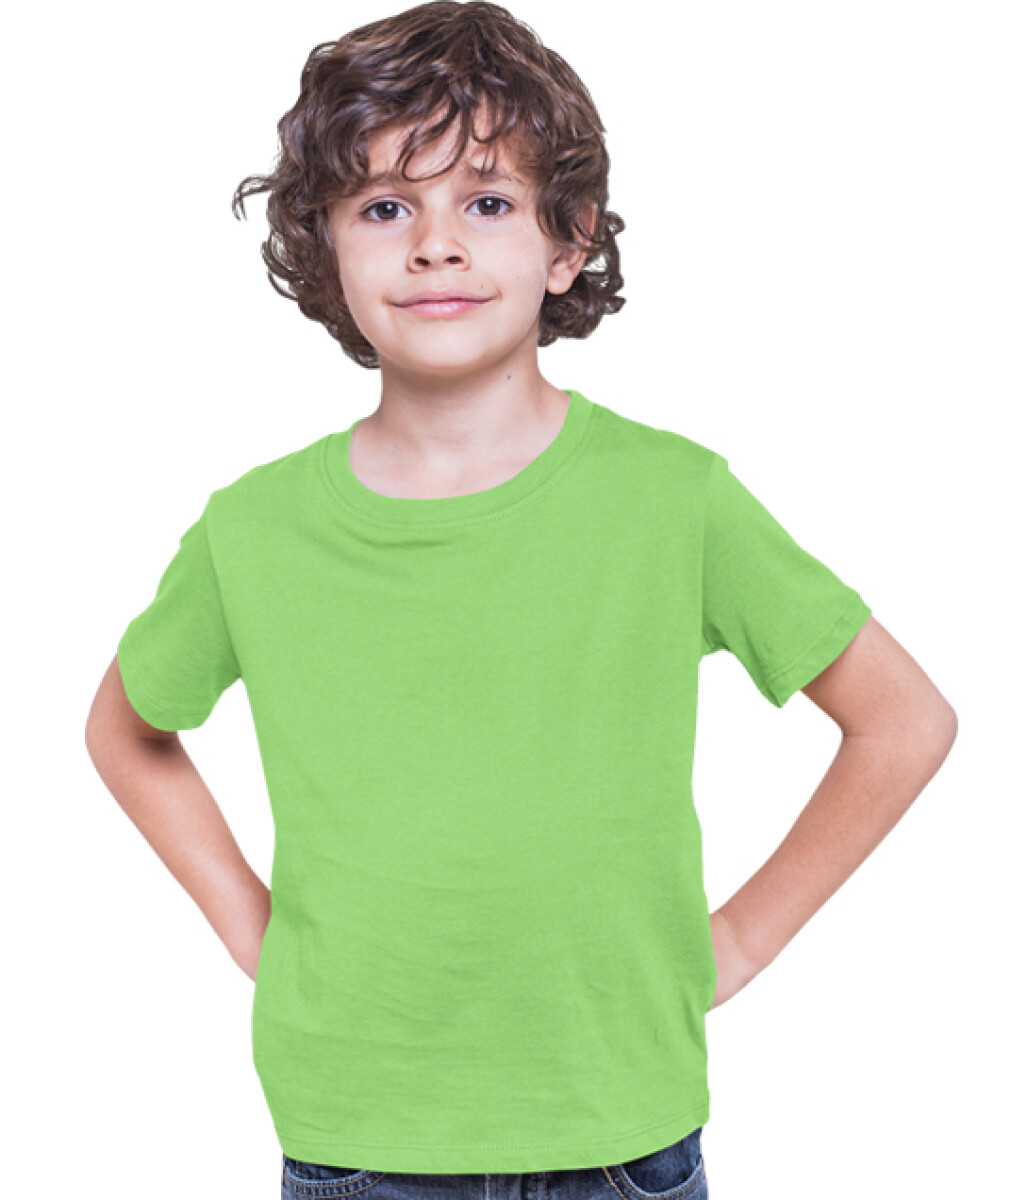 Camiseta a la base joven - Verde lima 